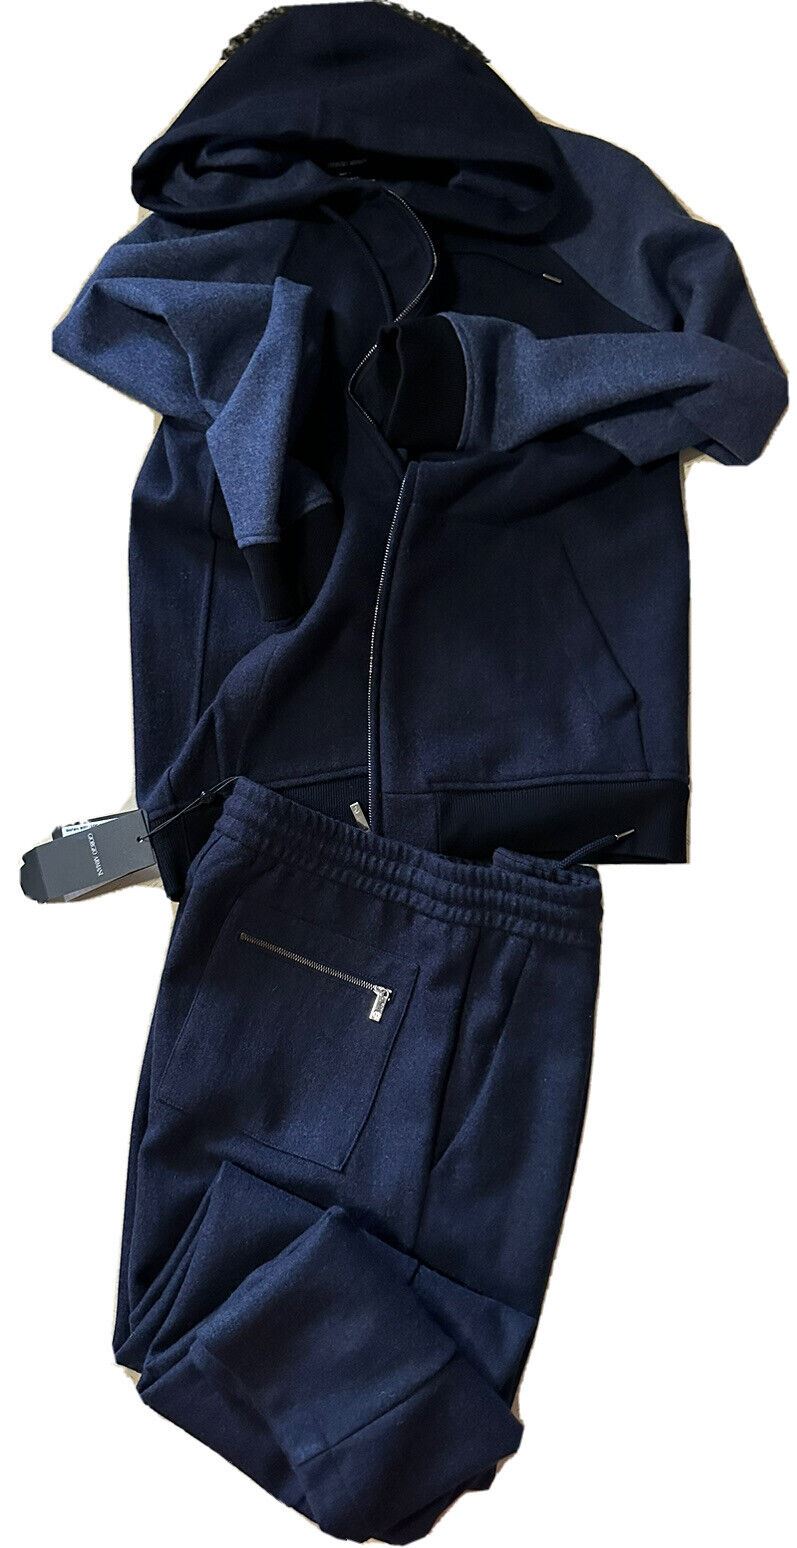 Neu $7690 Giorgio Armani Herren-Kaschmir-Trainingsanzug, Farbe Marineblau, 38 US/48 EU, Italien